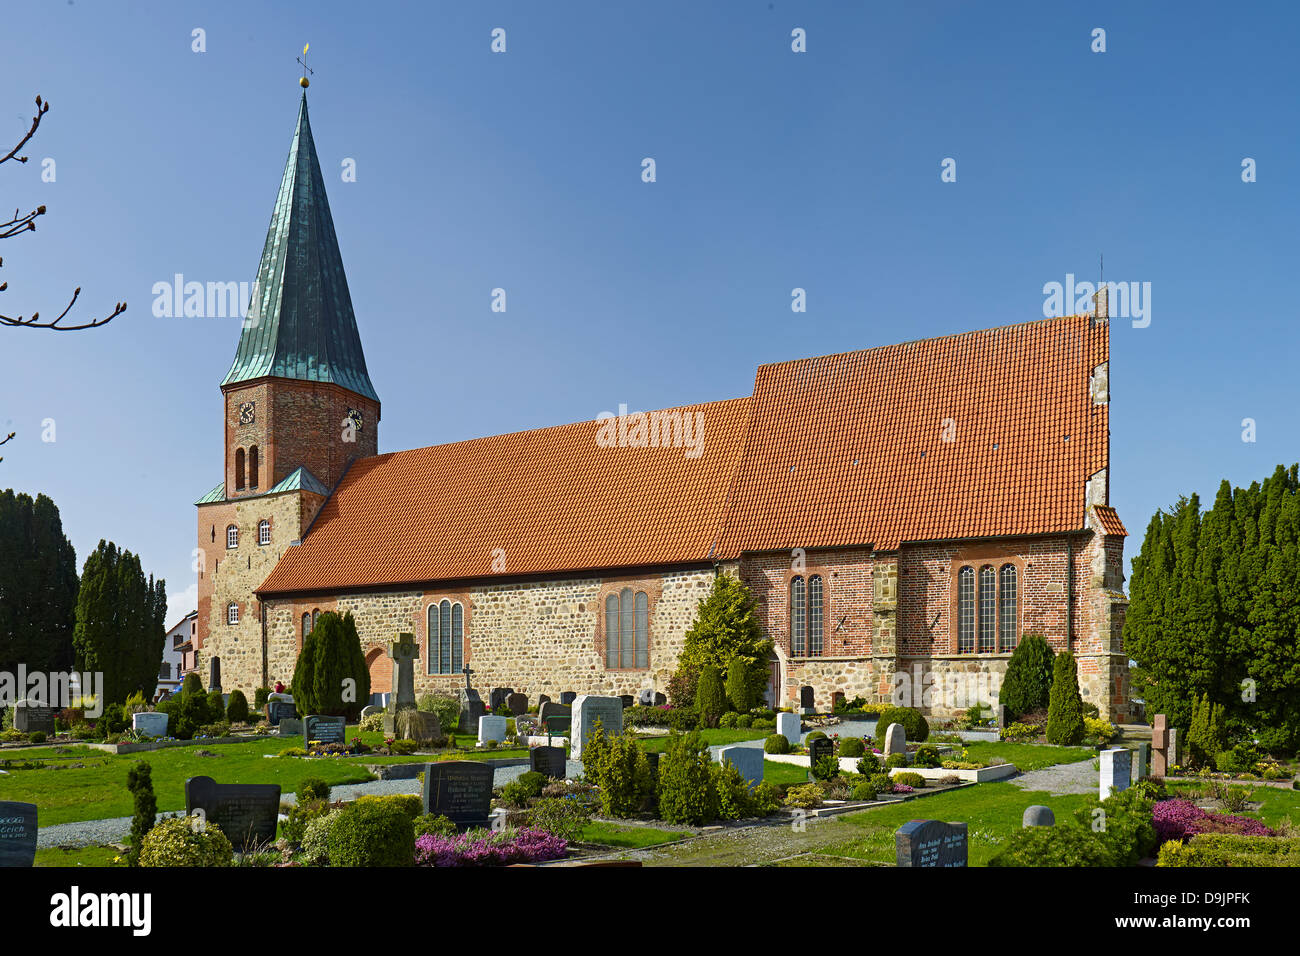 St.-Urban-Kirche in Dorum, Wursten, Landkreis Cuxhaven, Niedersachsen, Deutschland Stockfoto